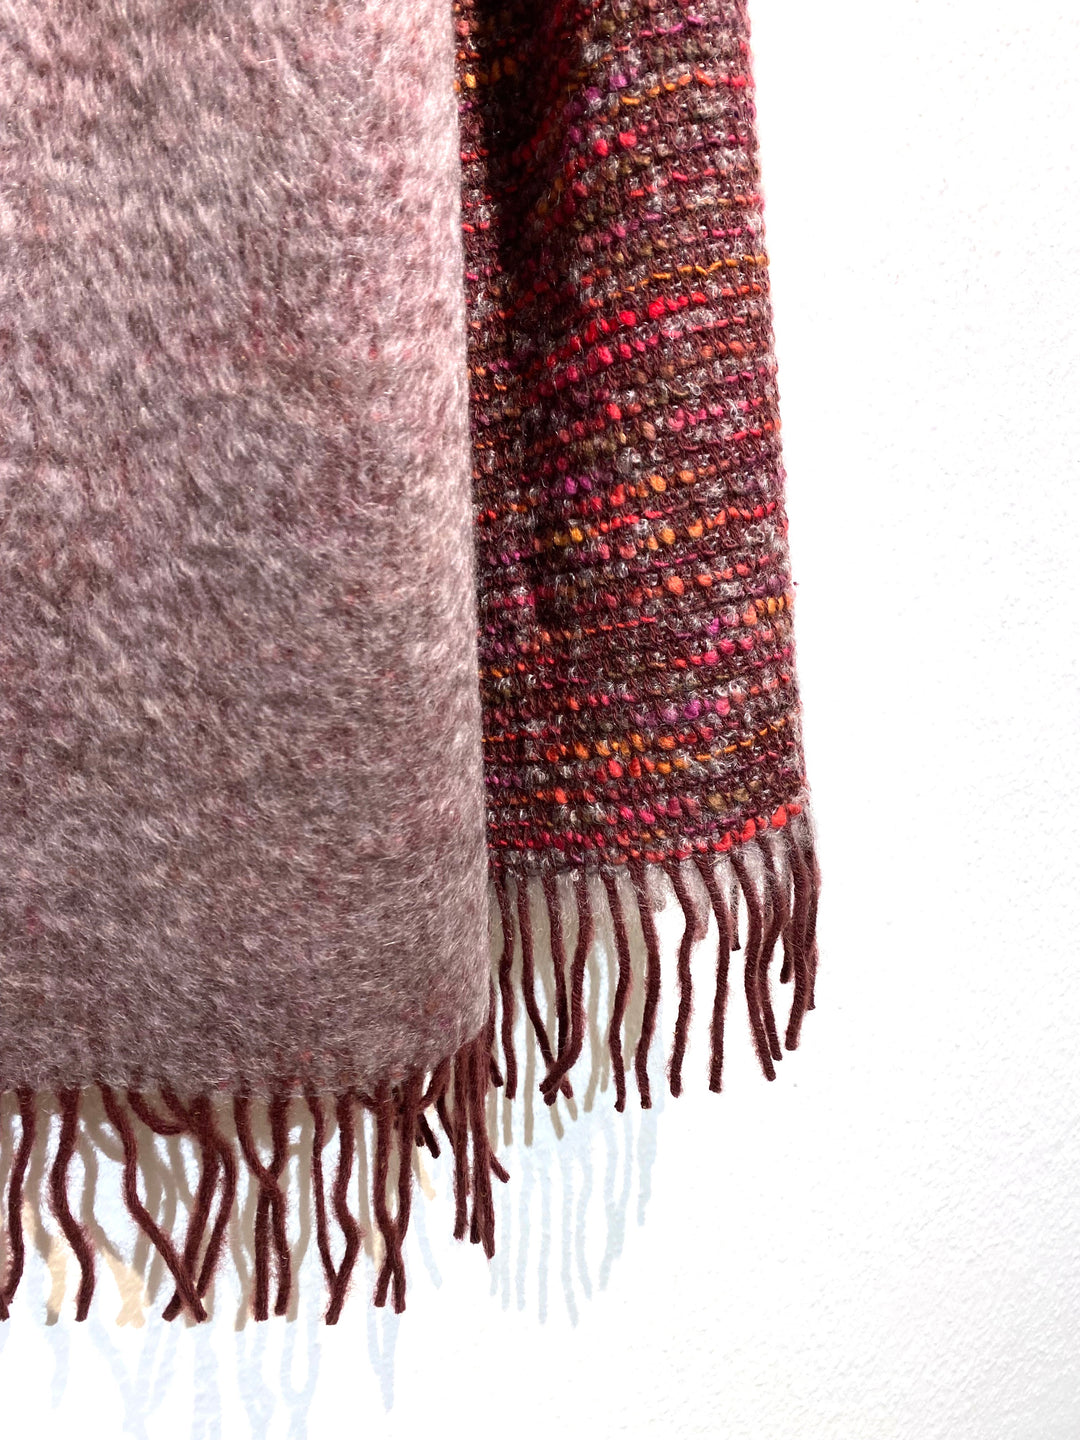 Mantas Ezcaray Wollschal Schal aus Mohair und Wolle - grau, rot, pink, gelb